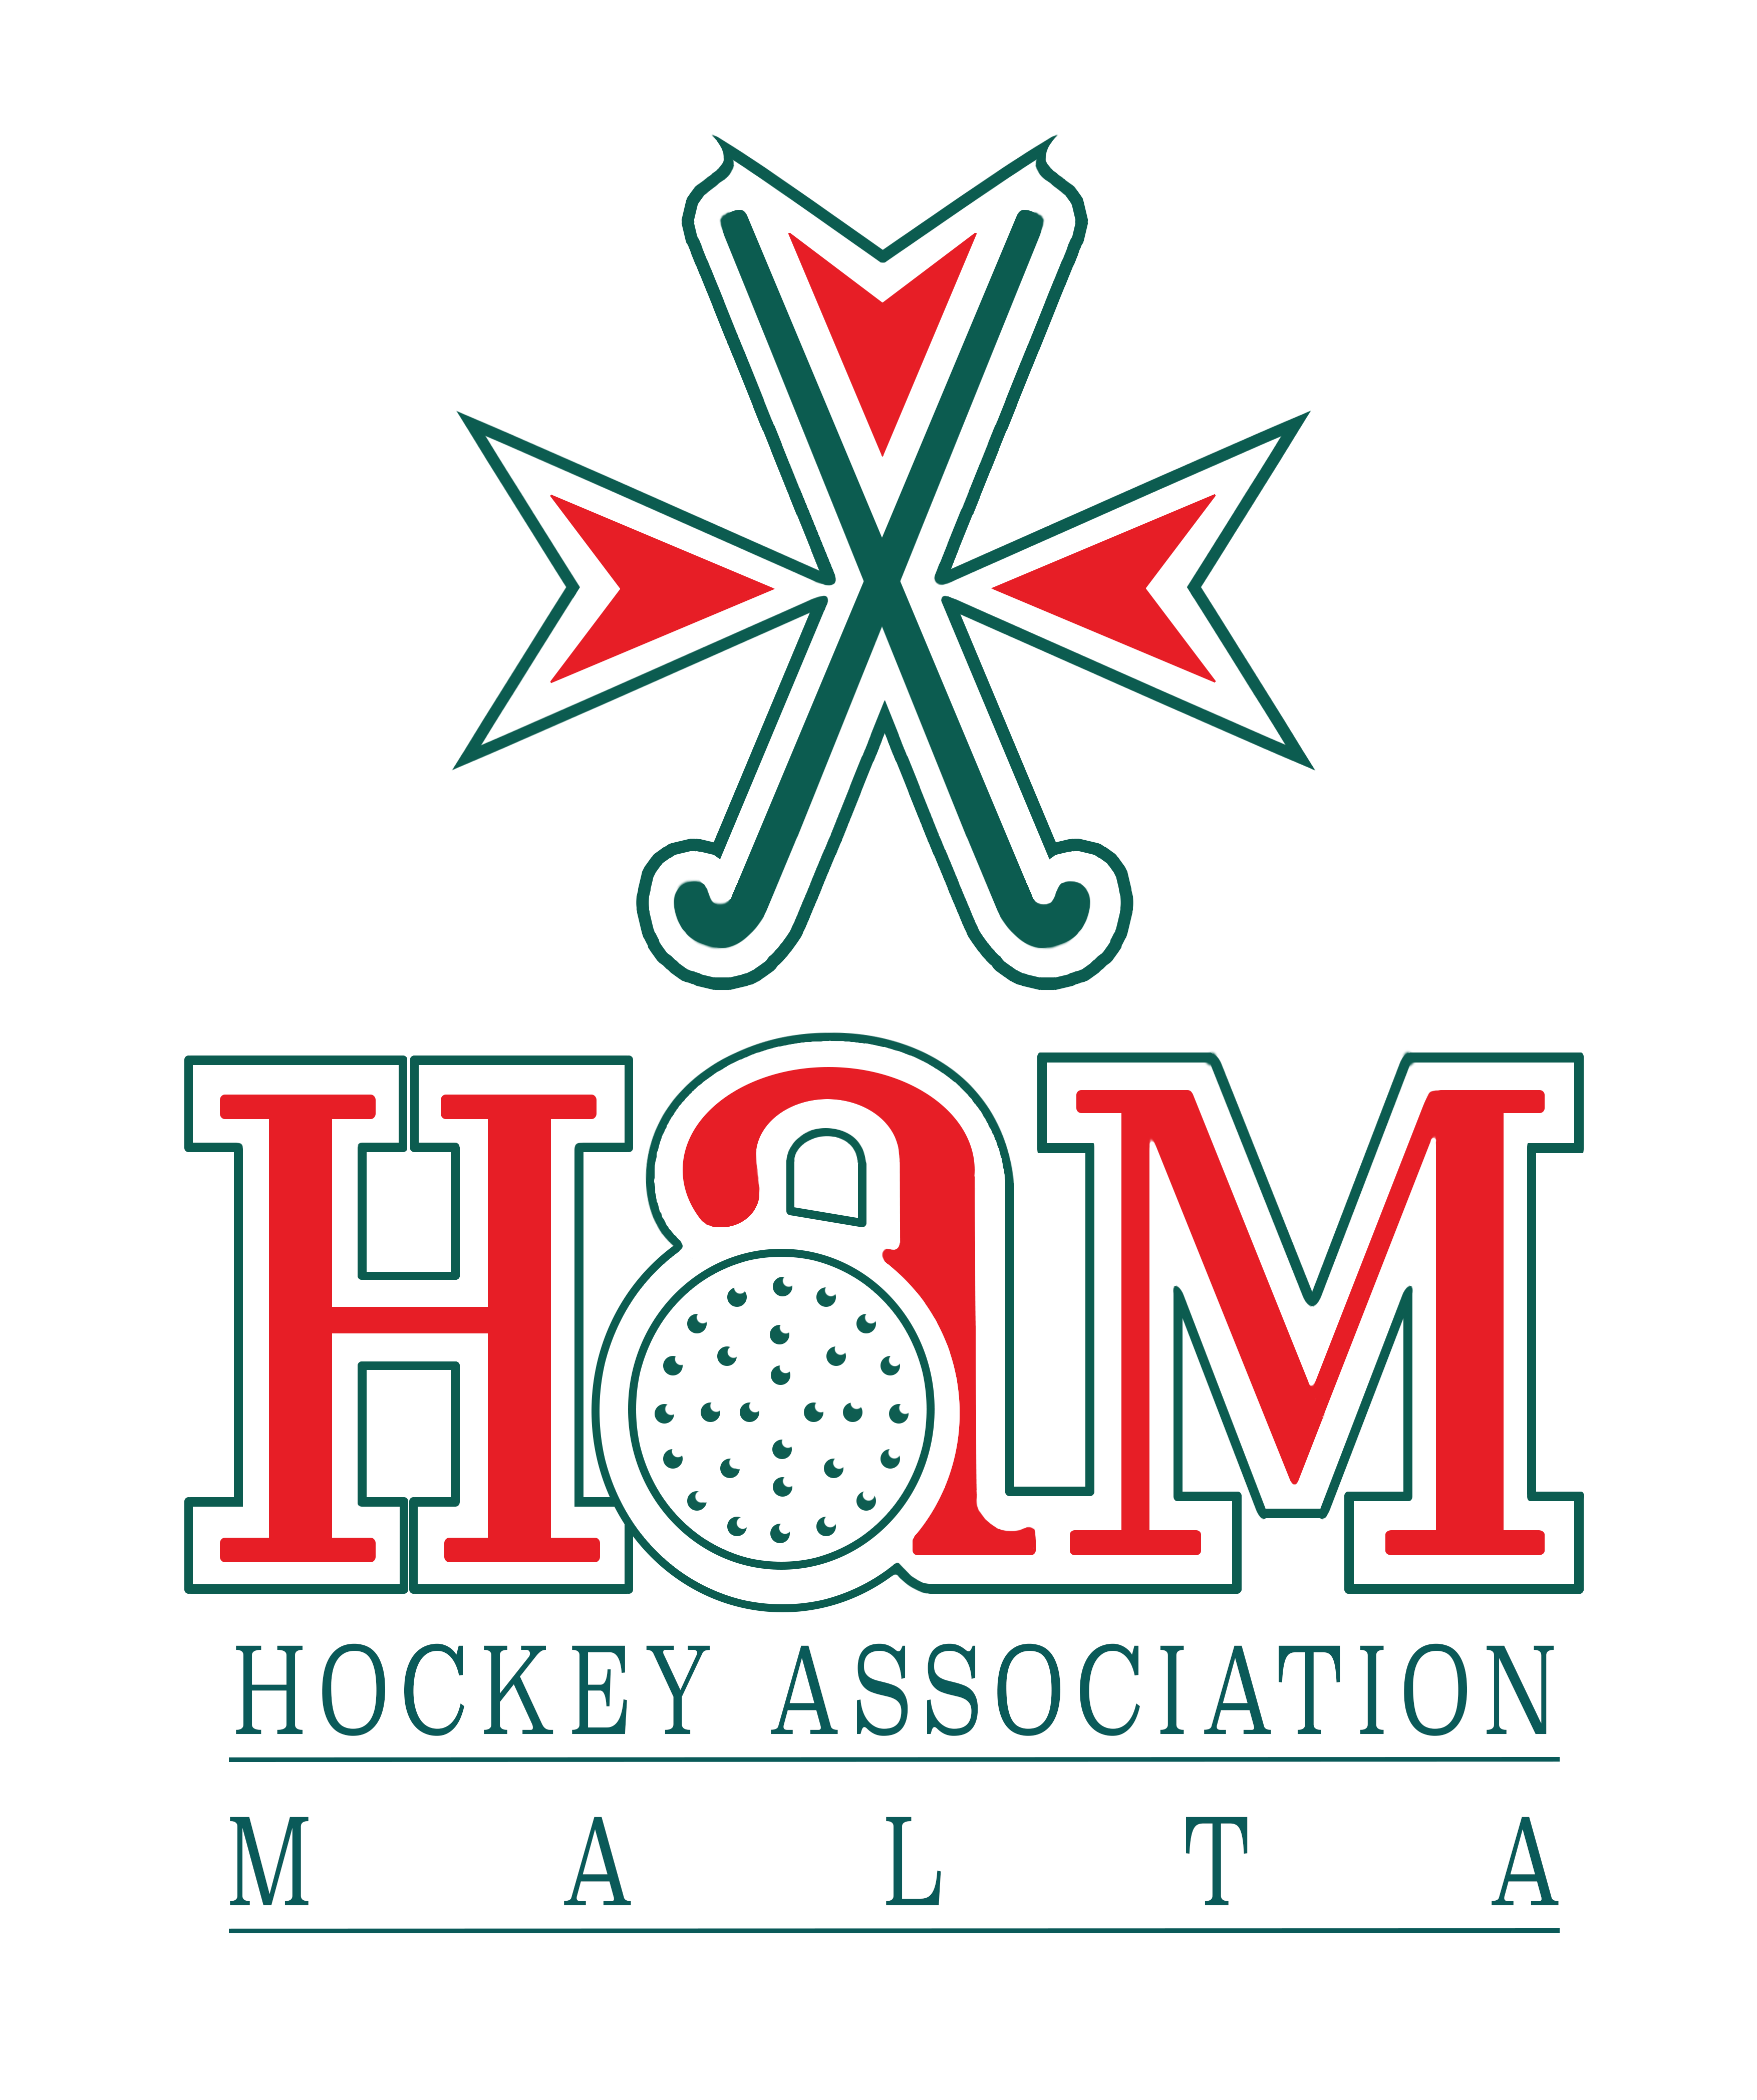 Hockey Association Malta